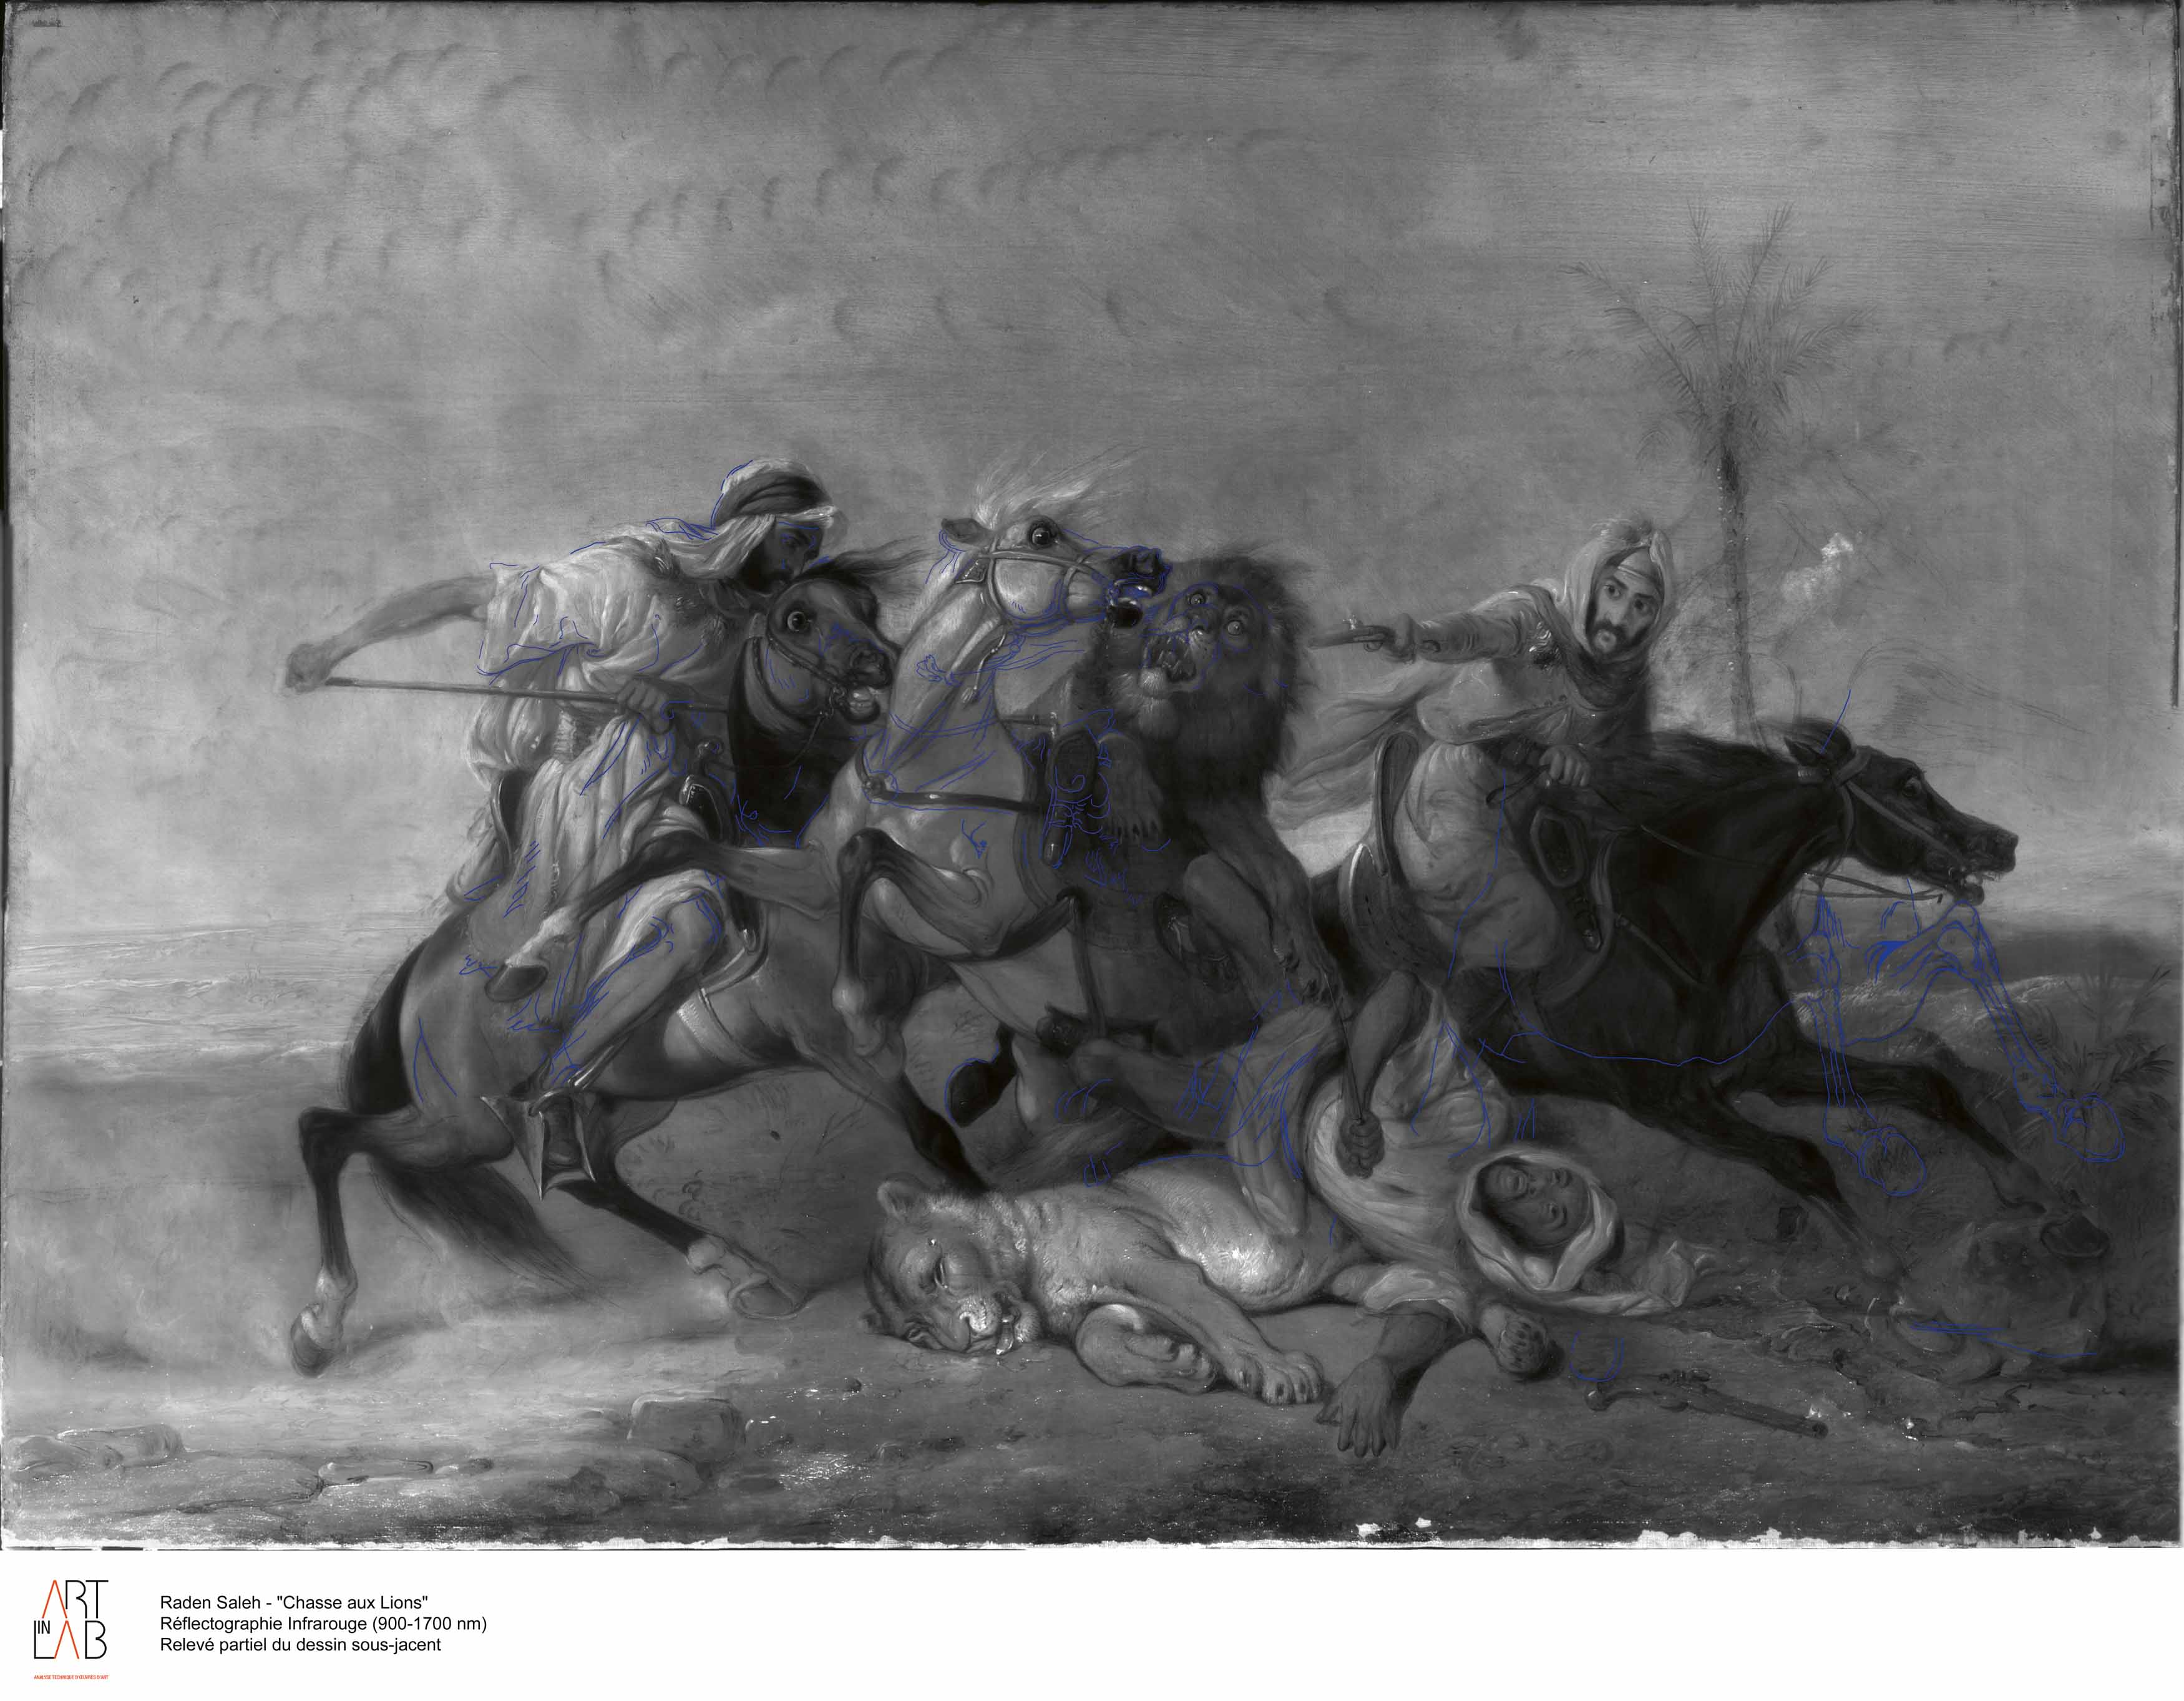 Raden Saleh Ben Jaggia: Battle between Arab Horsemen and a Lion - Image 5 of 6